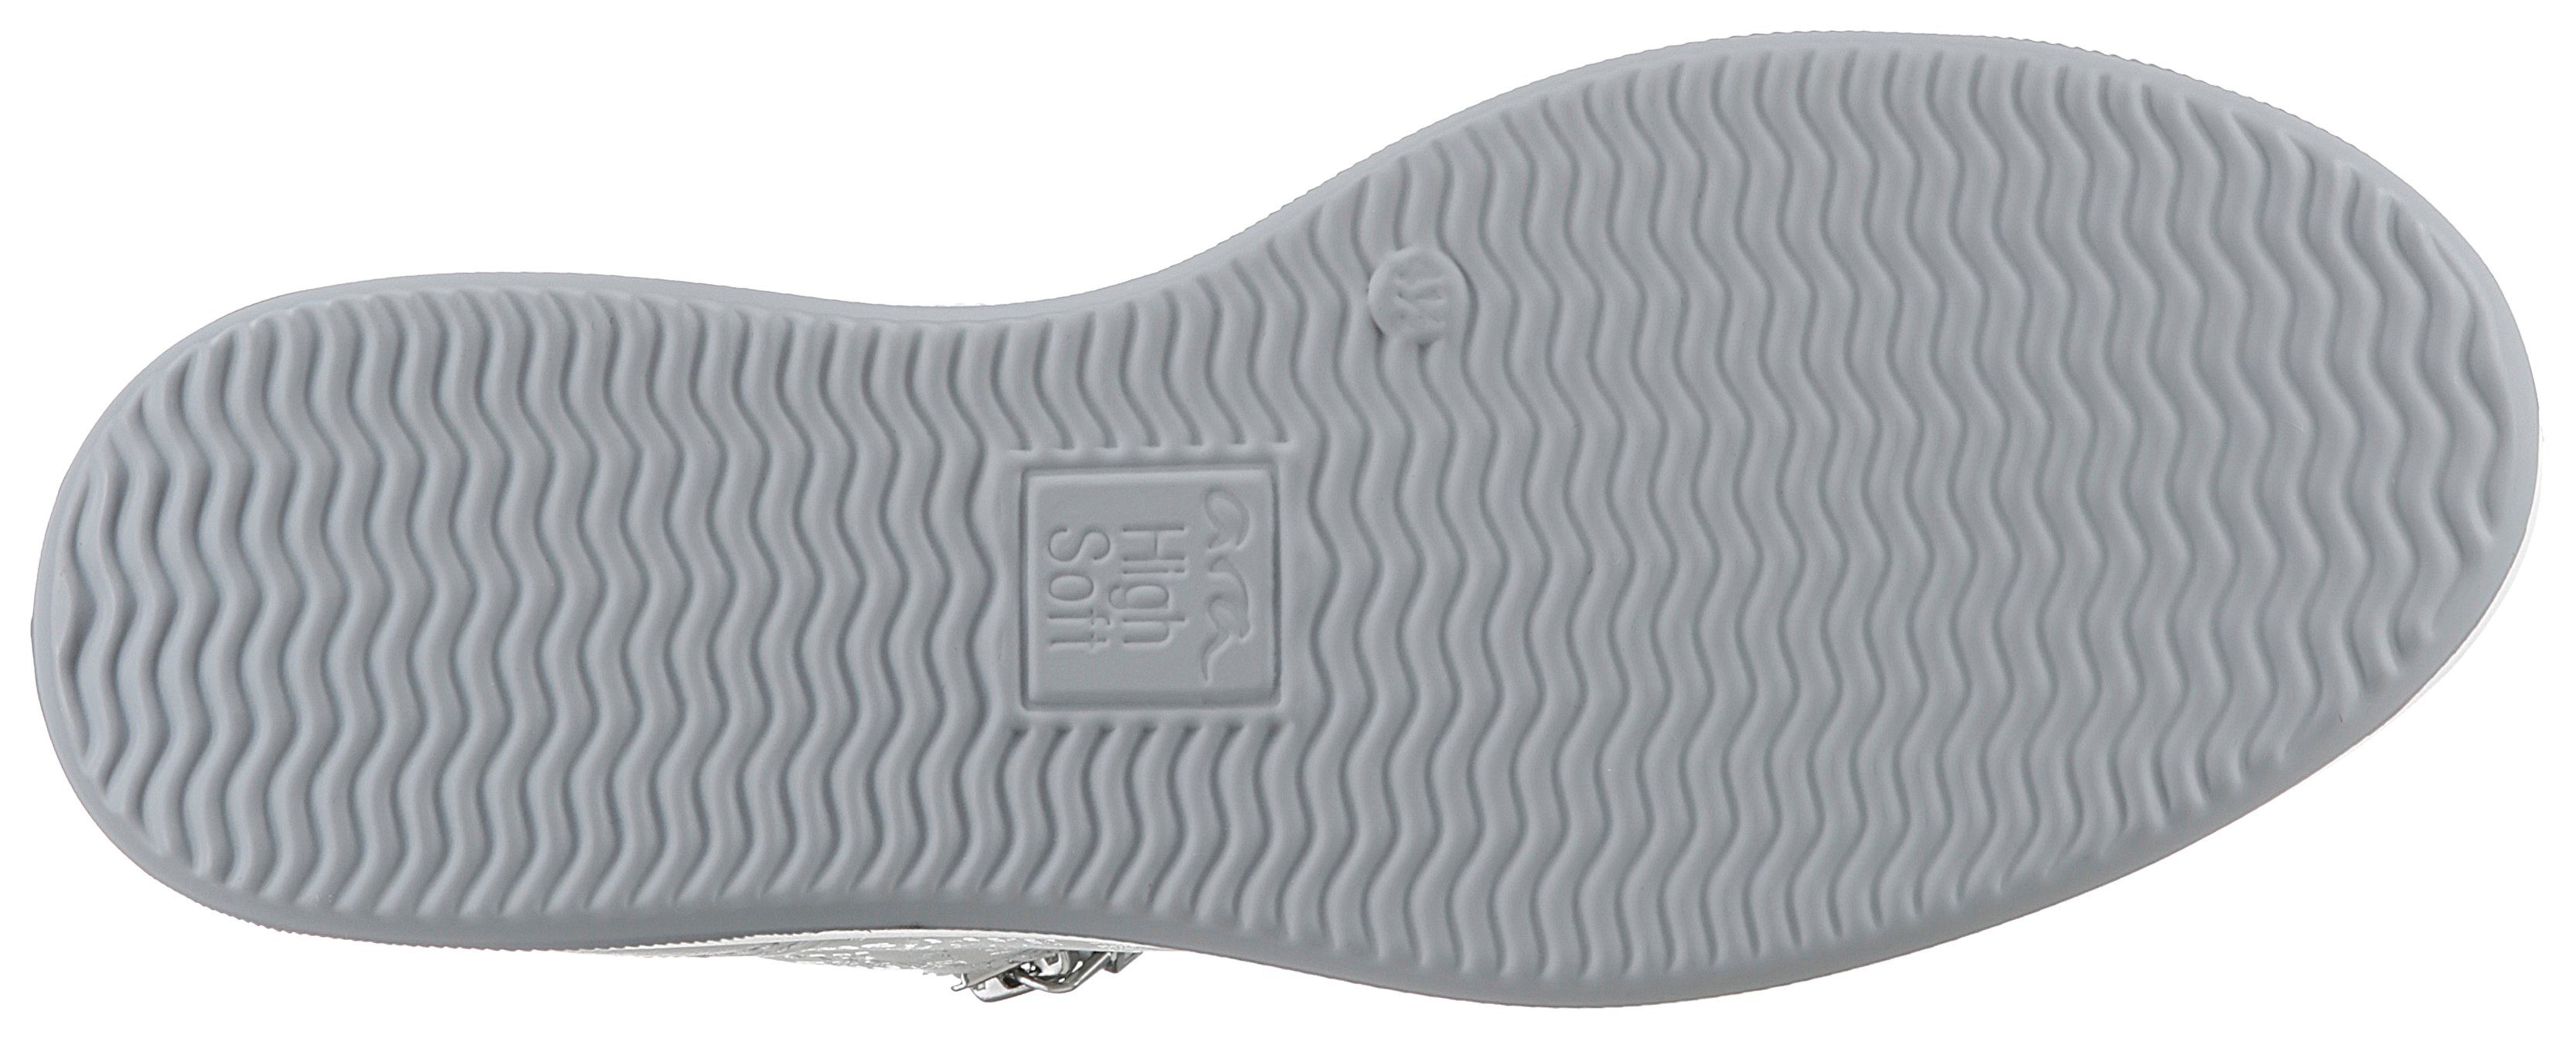 Ara ROMA mit herausnehmbarem H-Weite Soft-Fußbett, High offwhite Sneaker